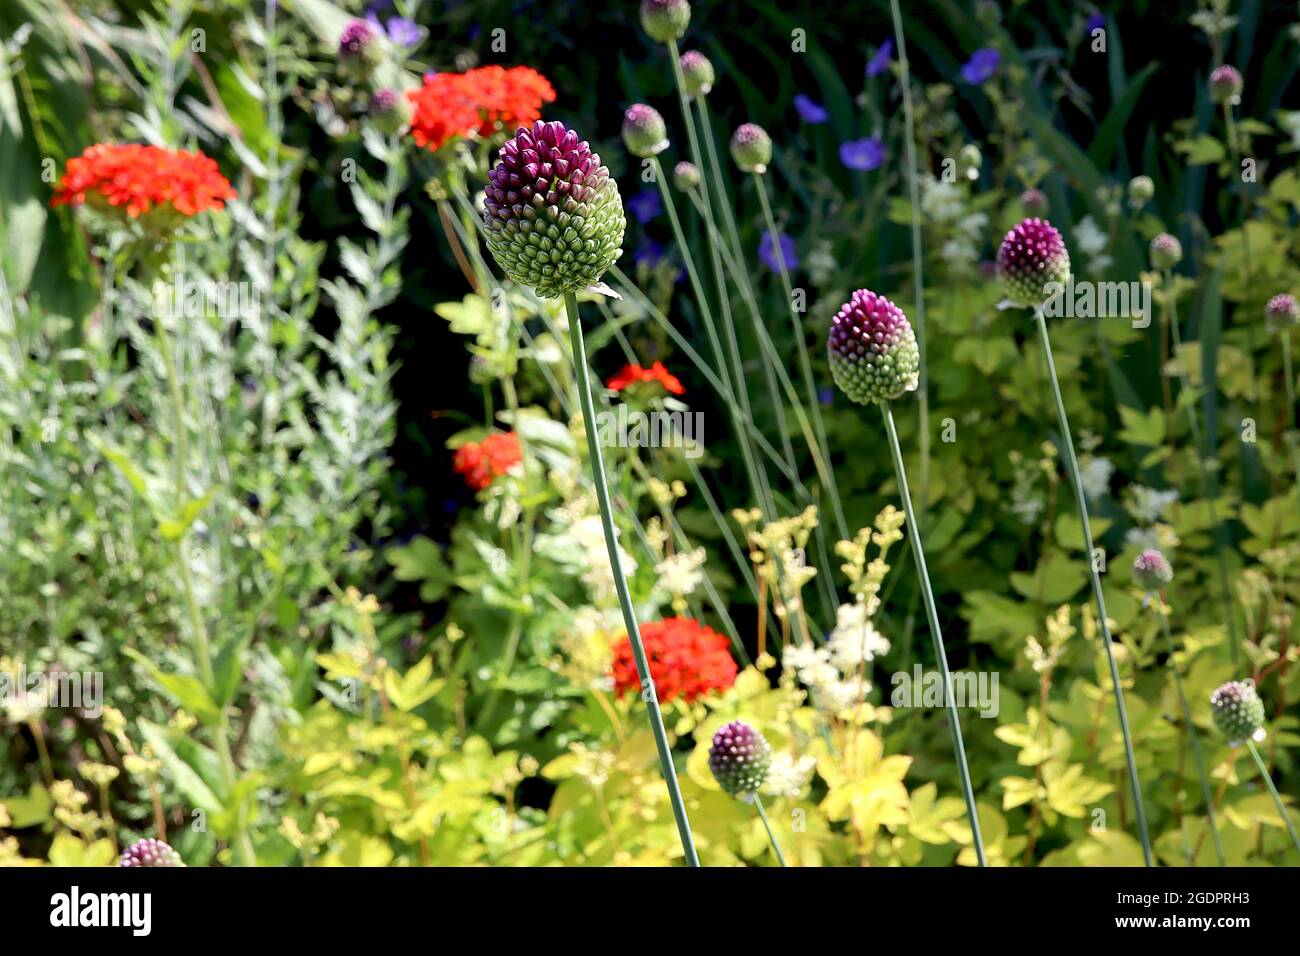 Allium sphaerocephalon drumstick allium – dichter eiförmiger Haufen tiefvioletter Blüten, Juli, England, Großbritannien Stockfoto